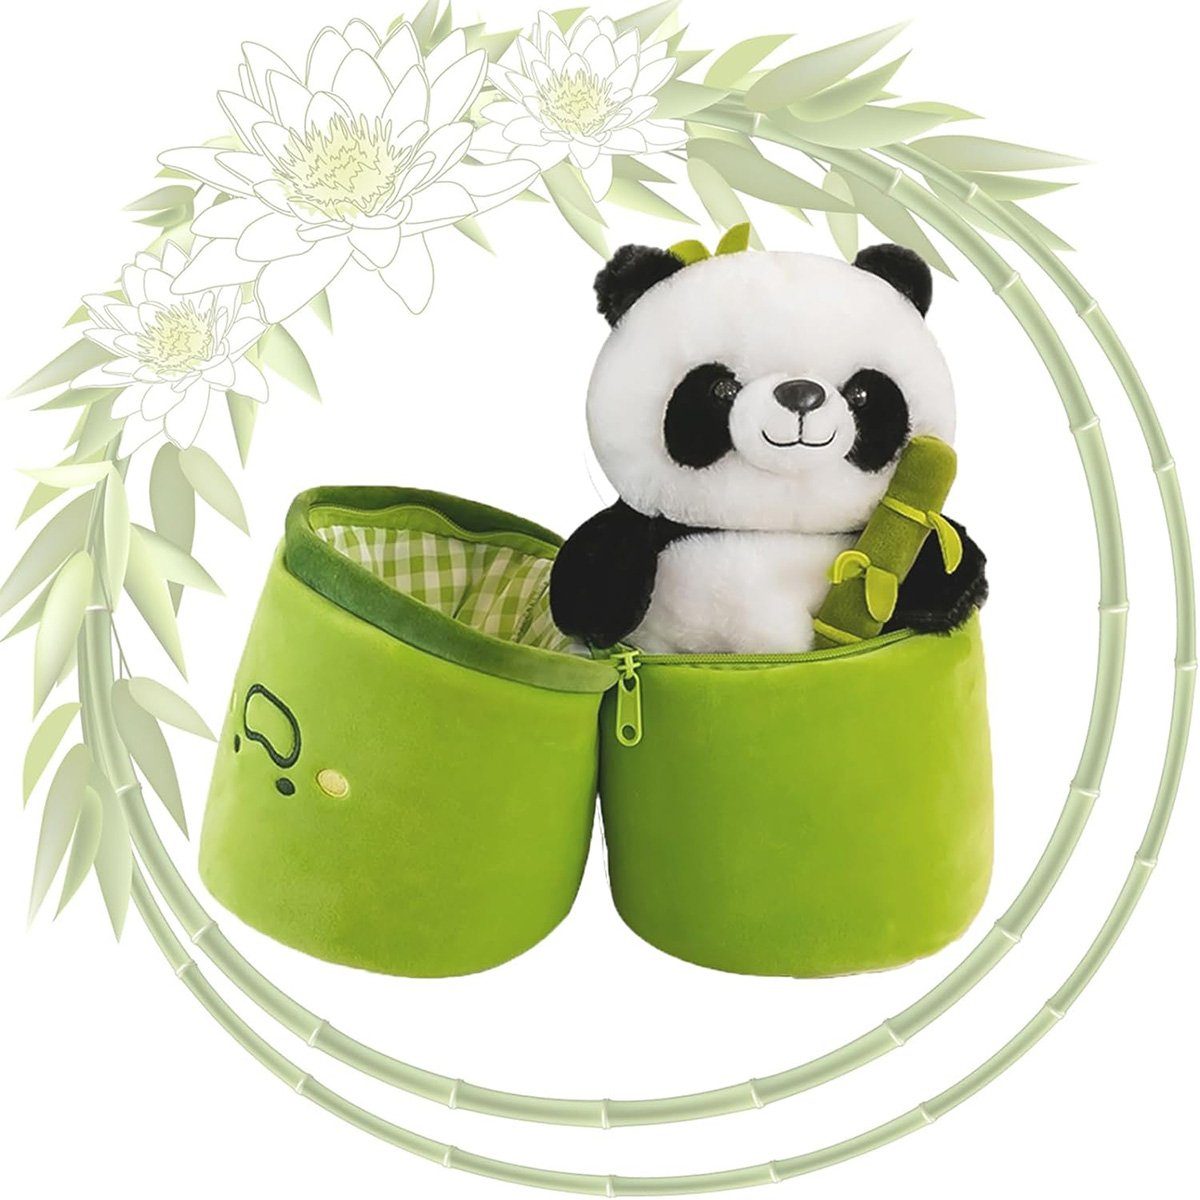 götäzer Fellkissen Plüschspielzeug aus Bambus, Weiches Plüsch-Bambus-Panda-Kissen